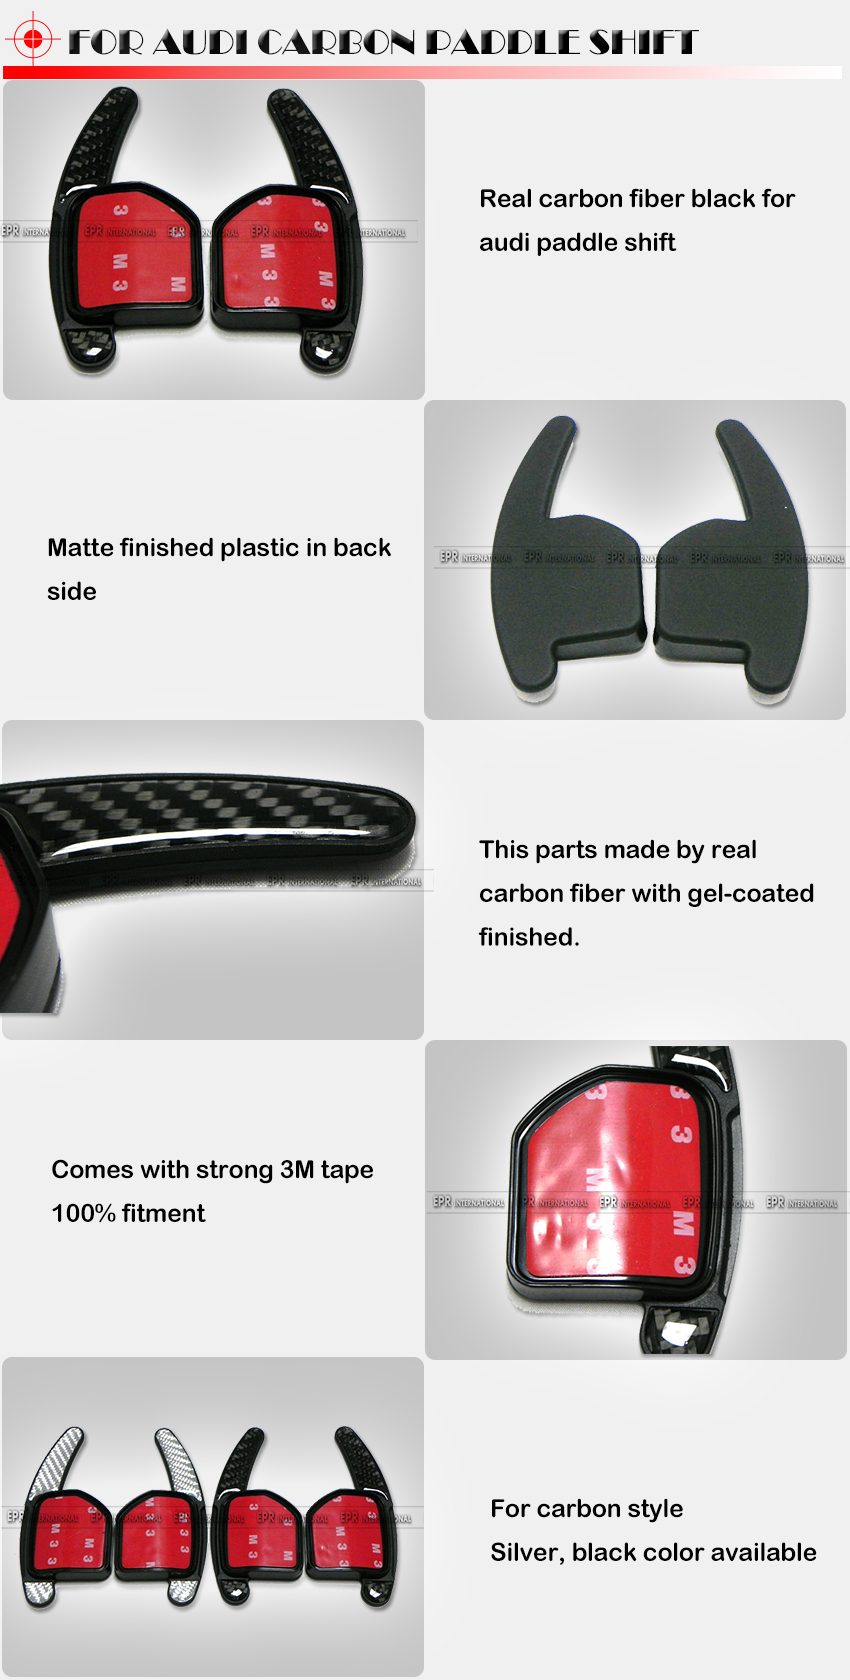 Audi Paddle Shift Black Carbon (3)1